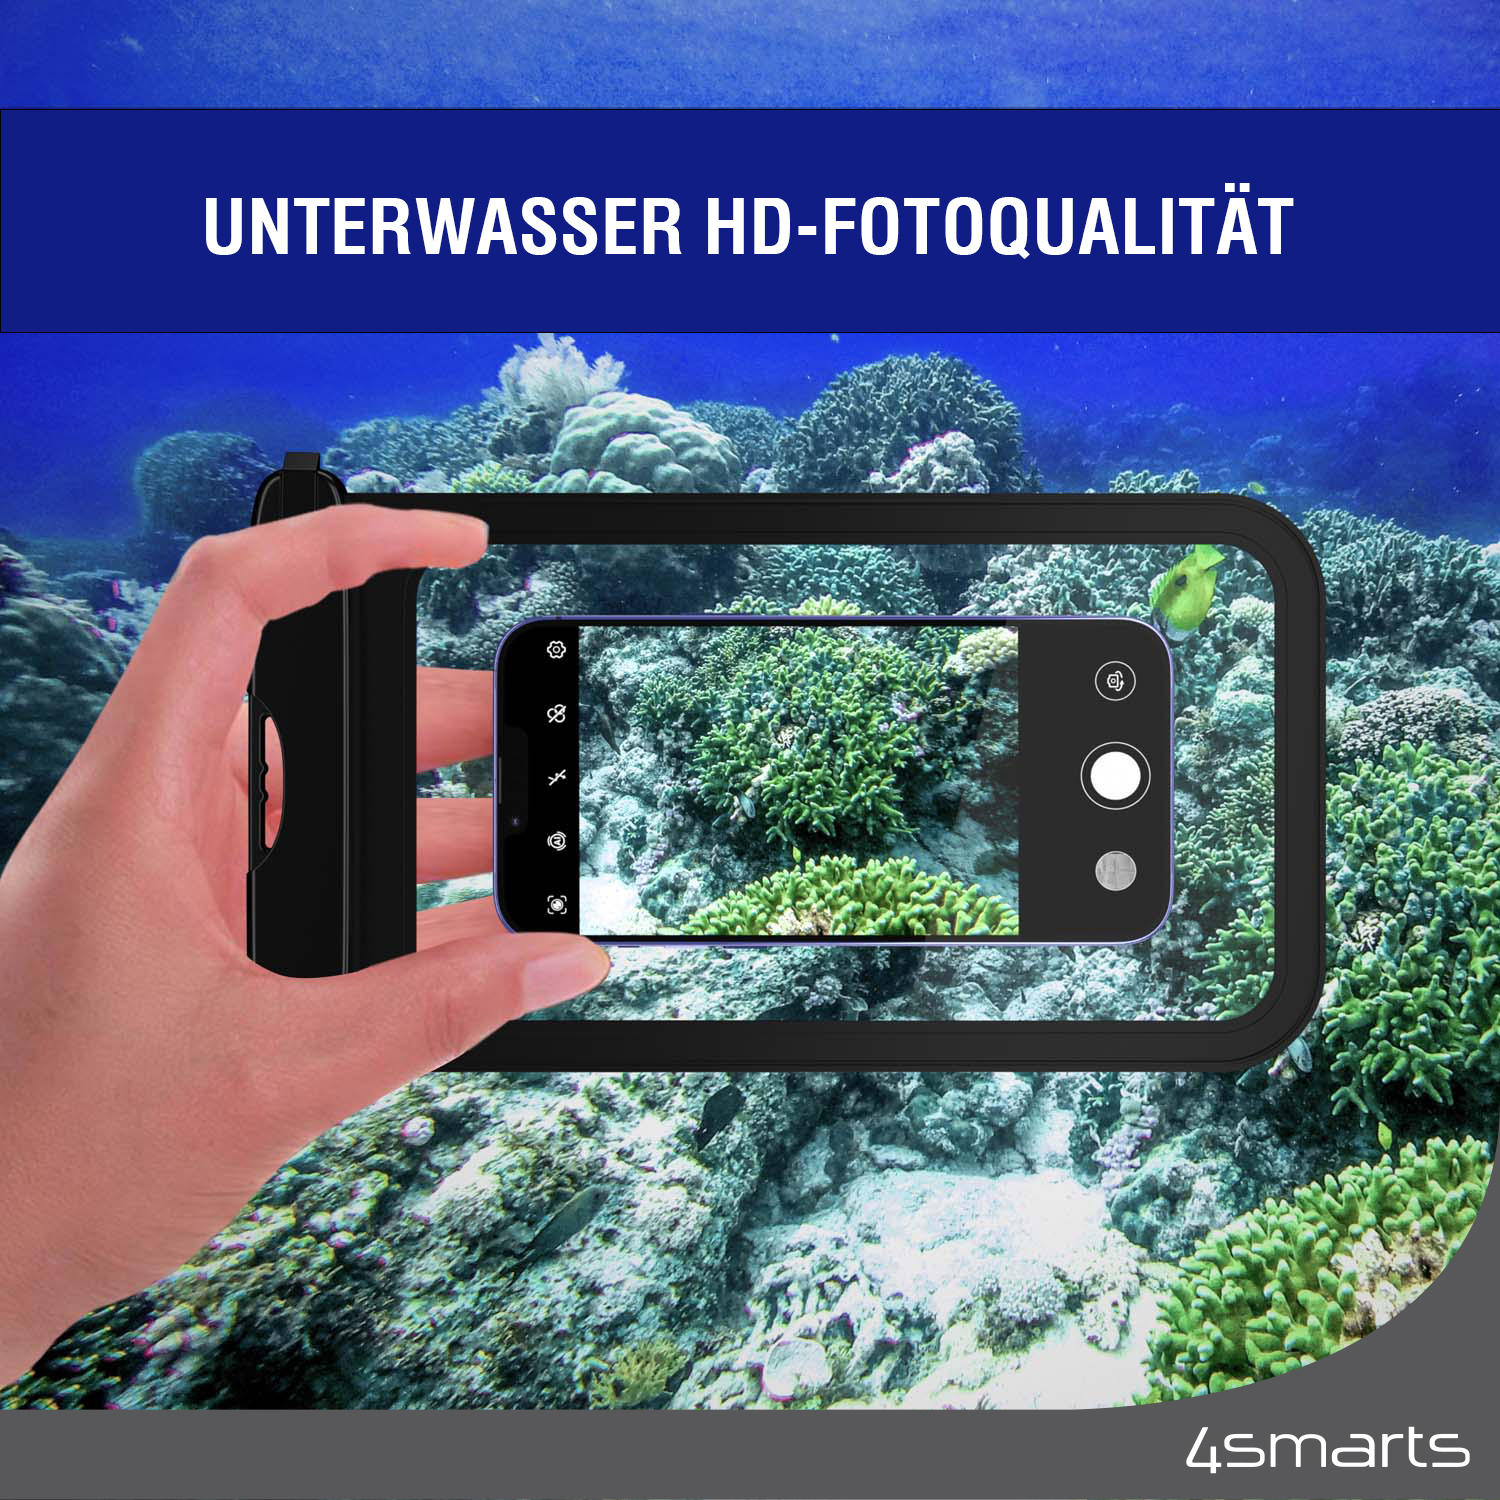 Das Lichtdurchlässige Material der 4smarts wasserdichte Tasche sorgt dafür, dass deine Unterwasserfotos von bestmöglicher Qualität sind.